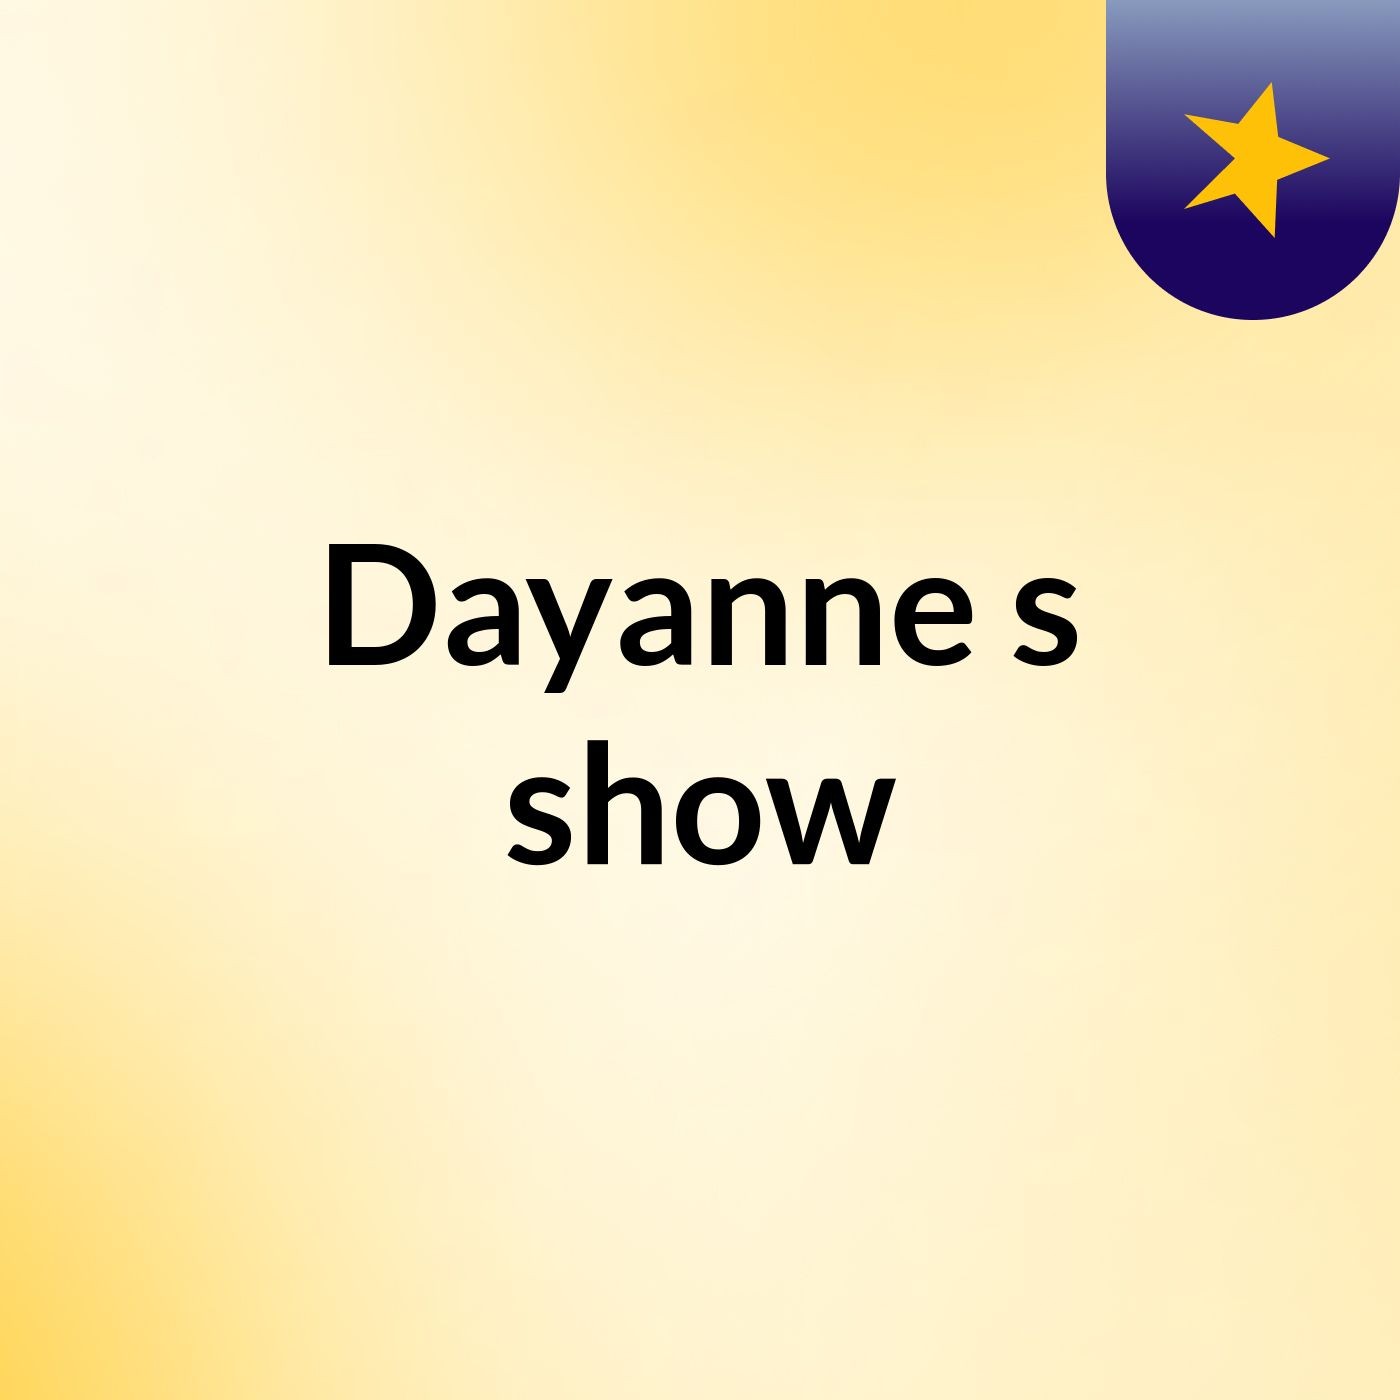 Dayanne's show